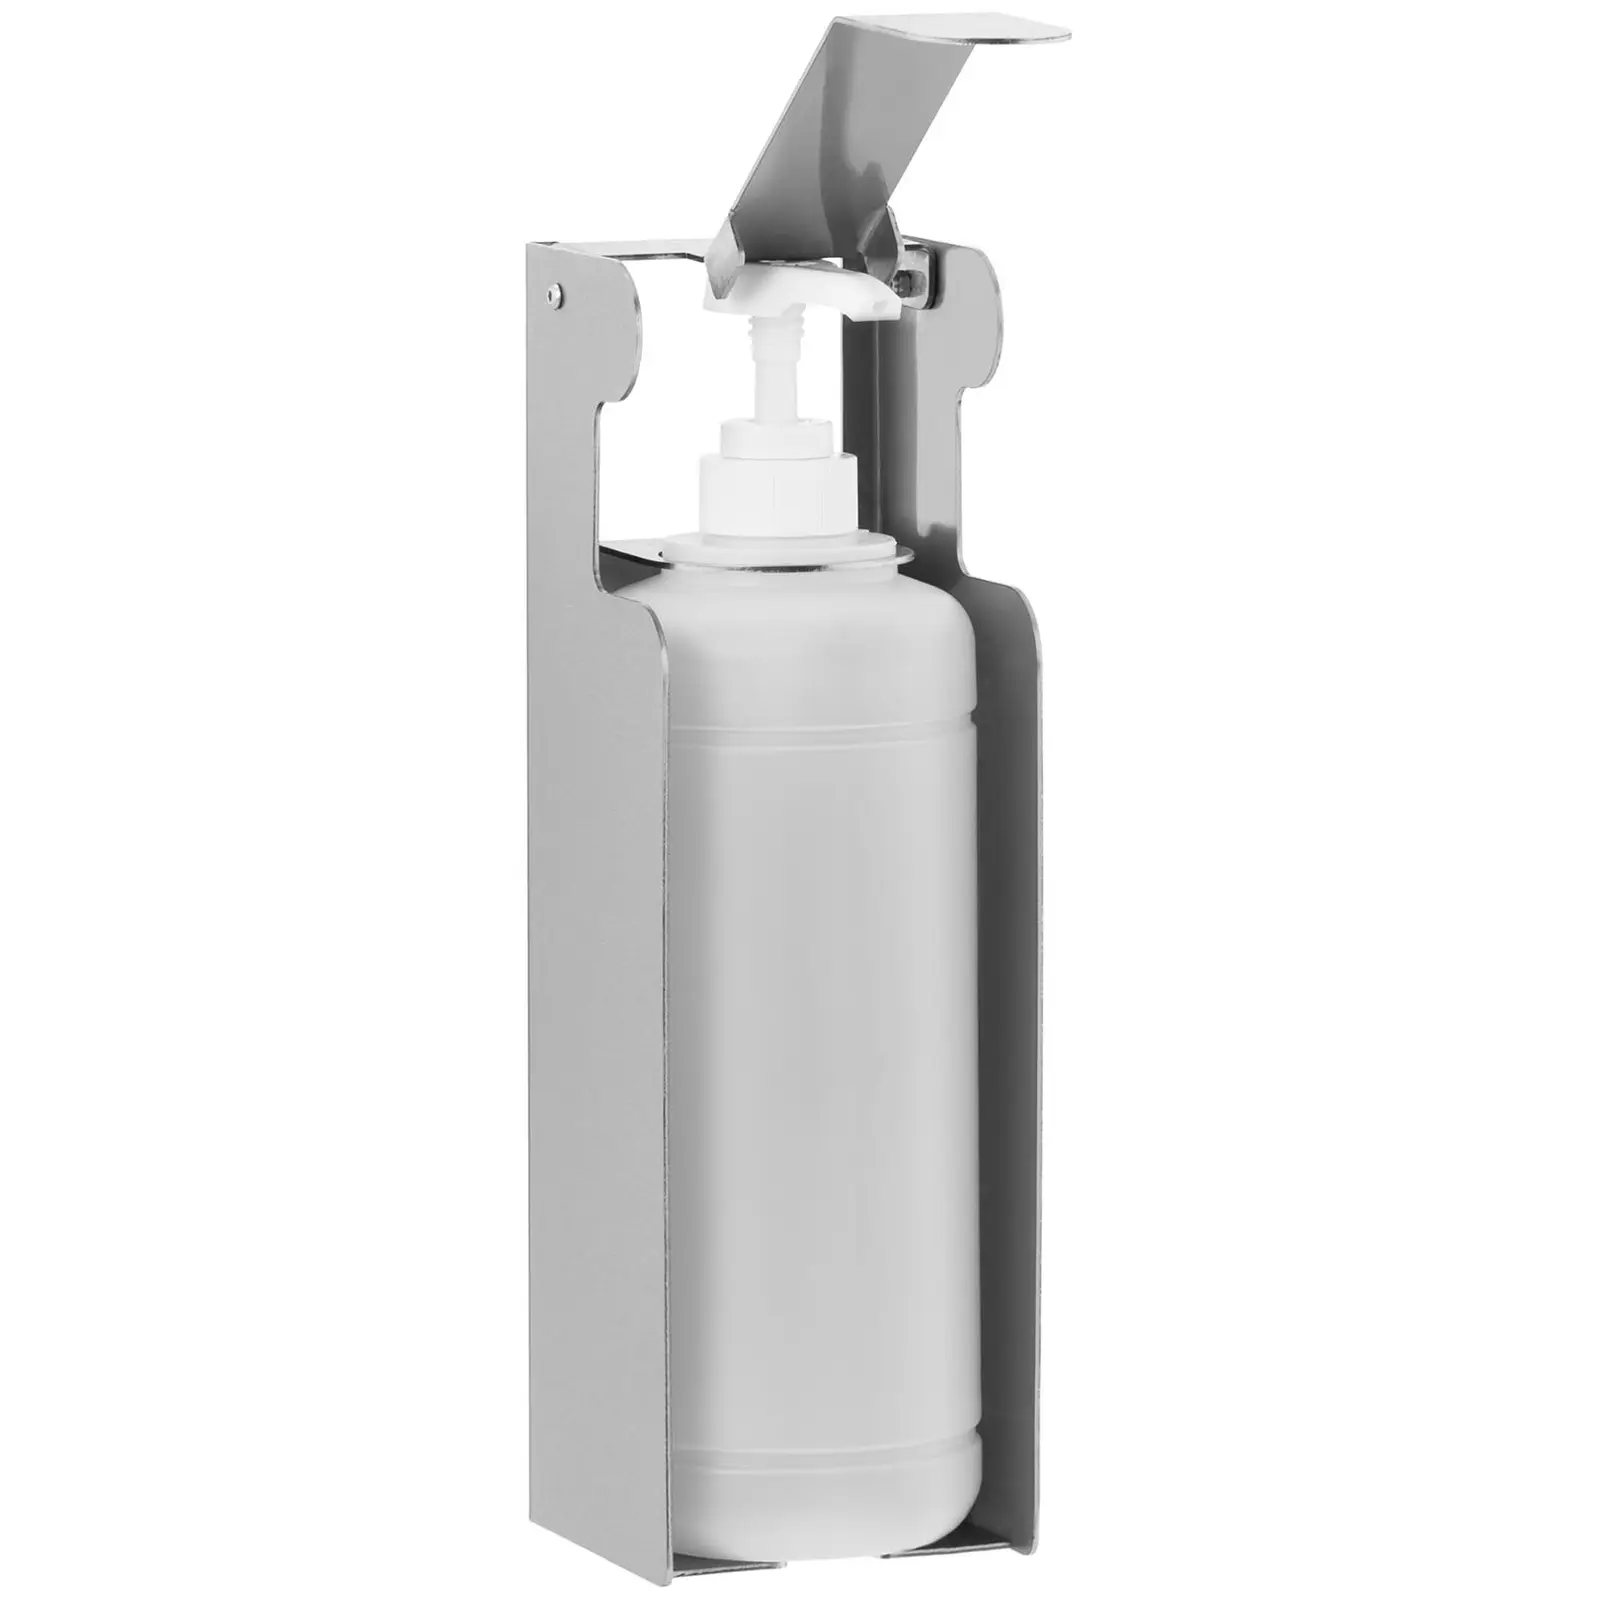 Hand Sanitiser Dispenser - 1,000 ml - wall mounting - stainless steel